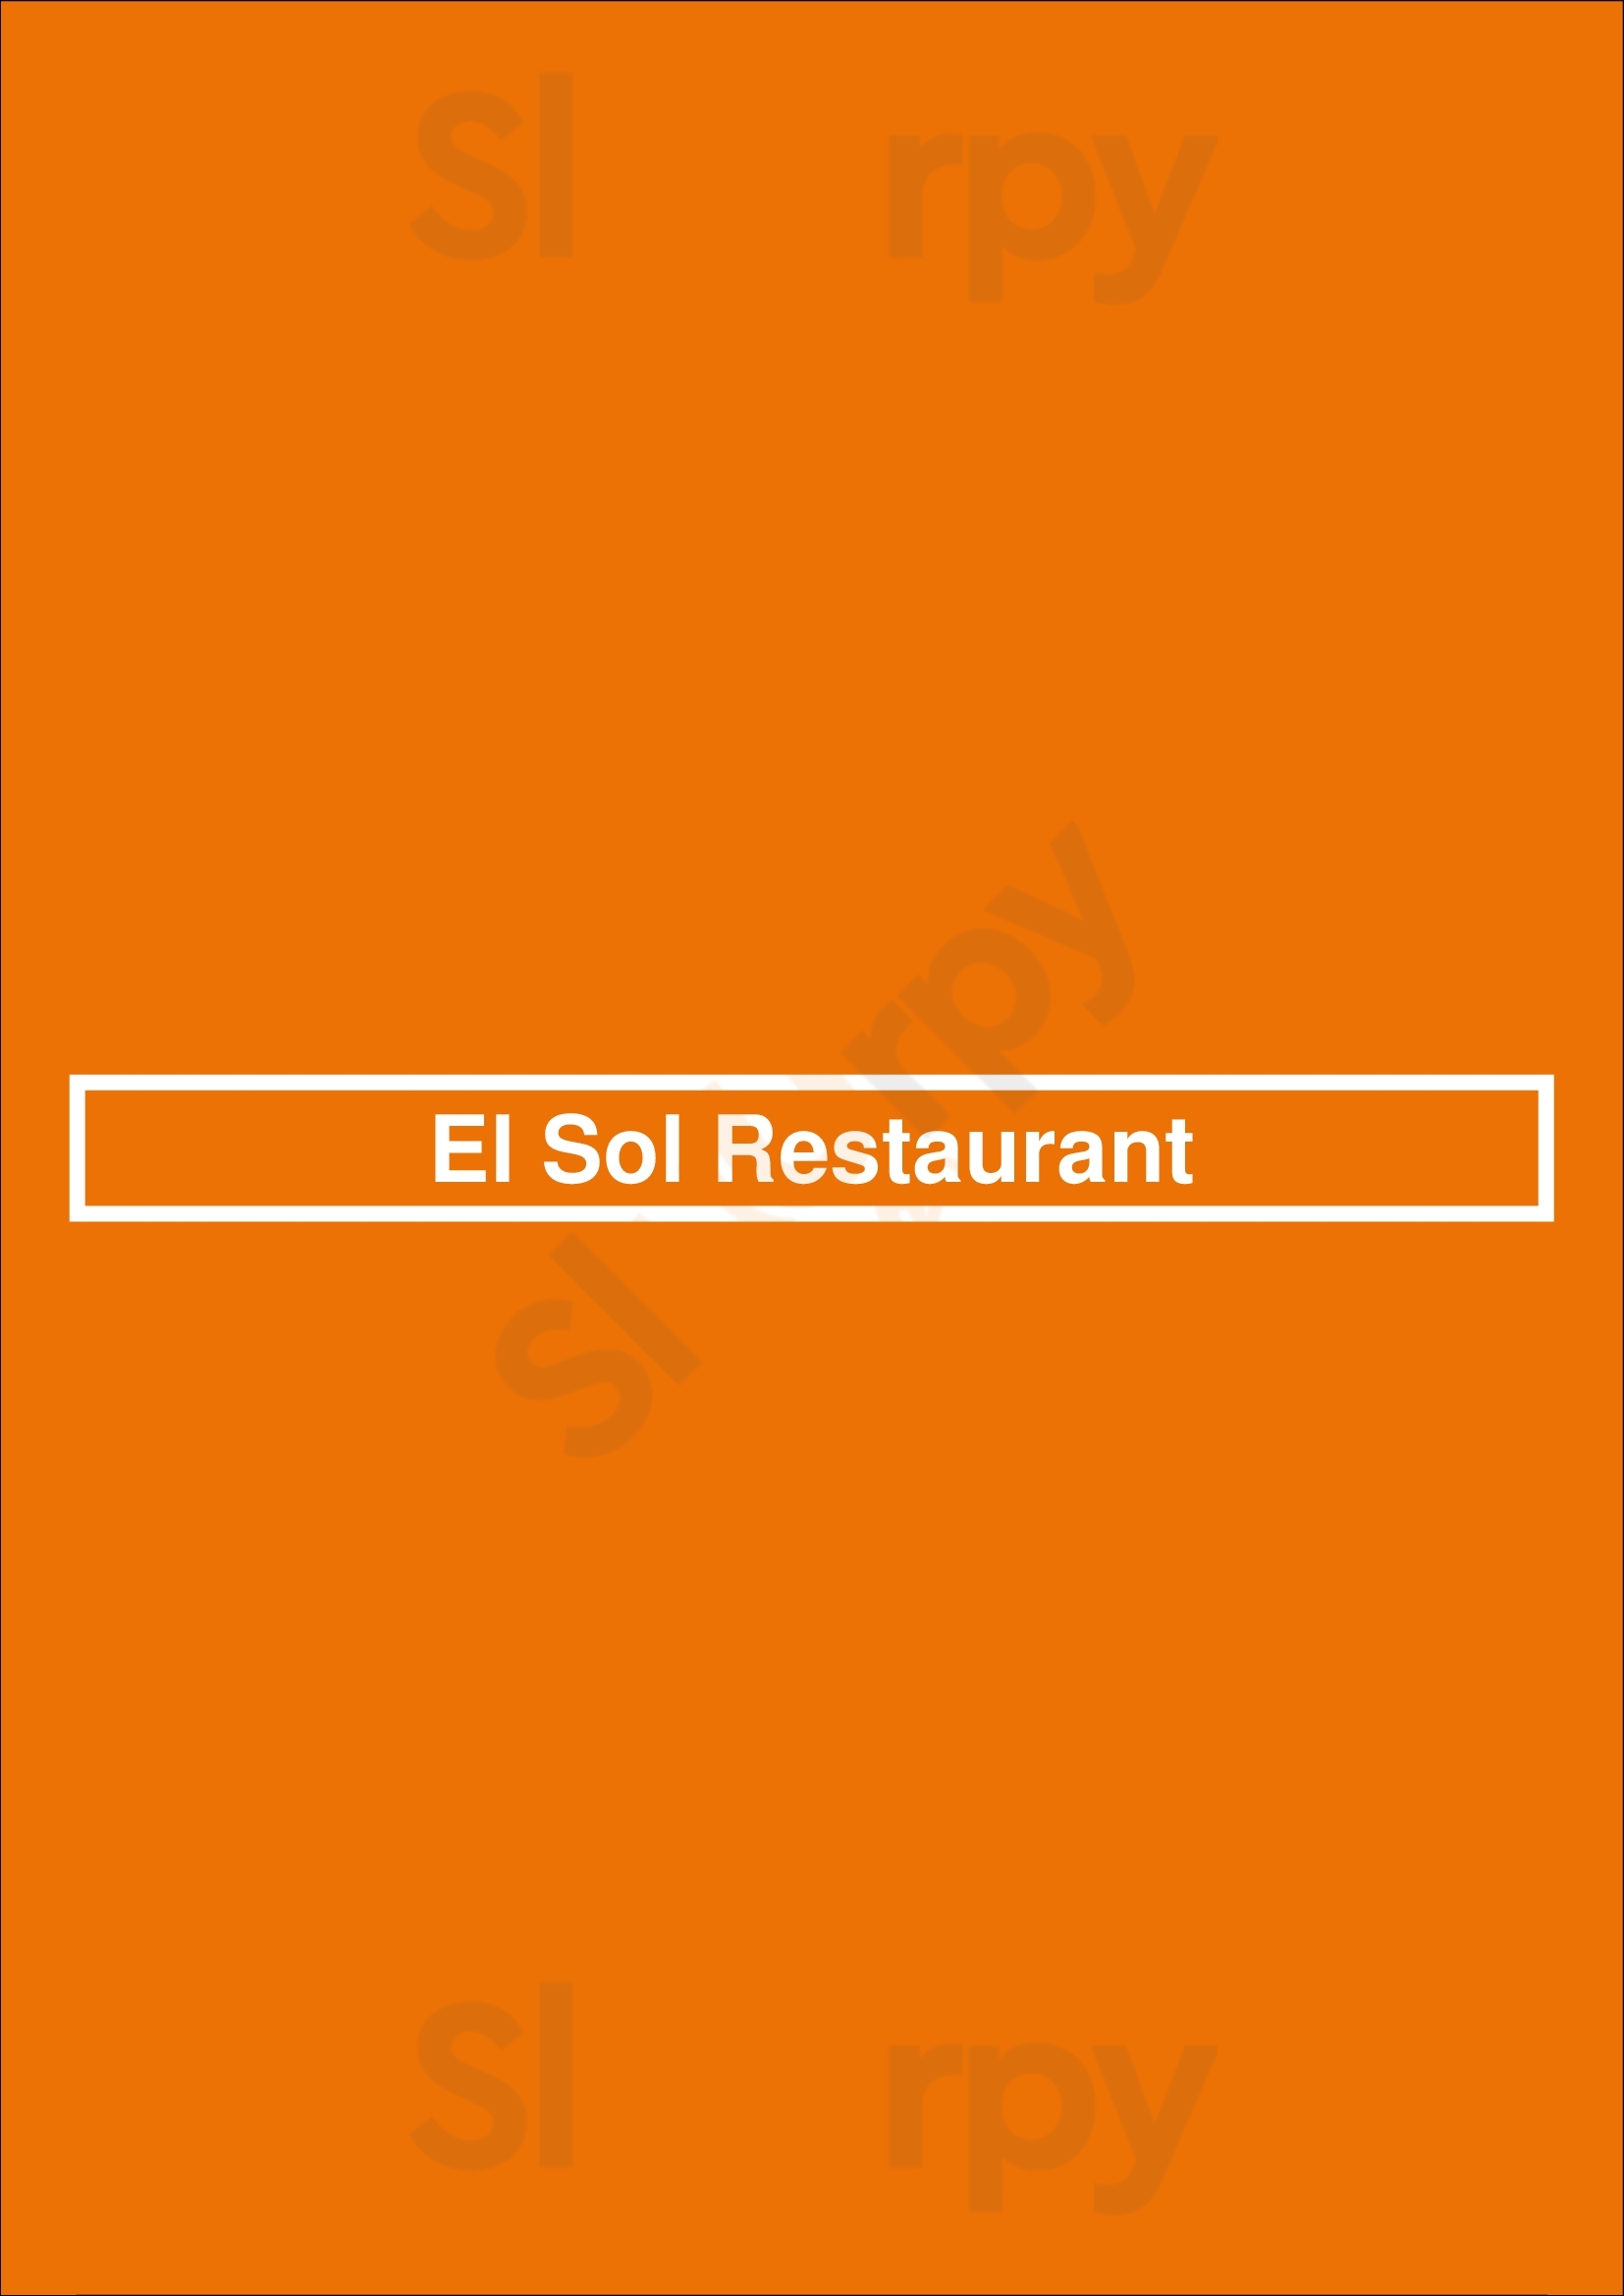 El Sol Restaurant Houston Menu - 1